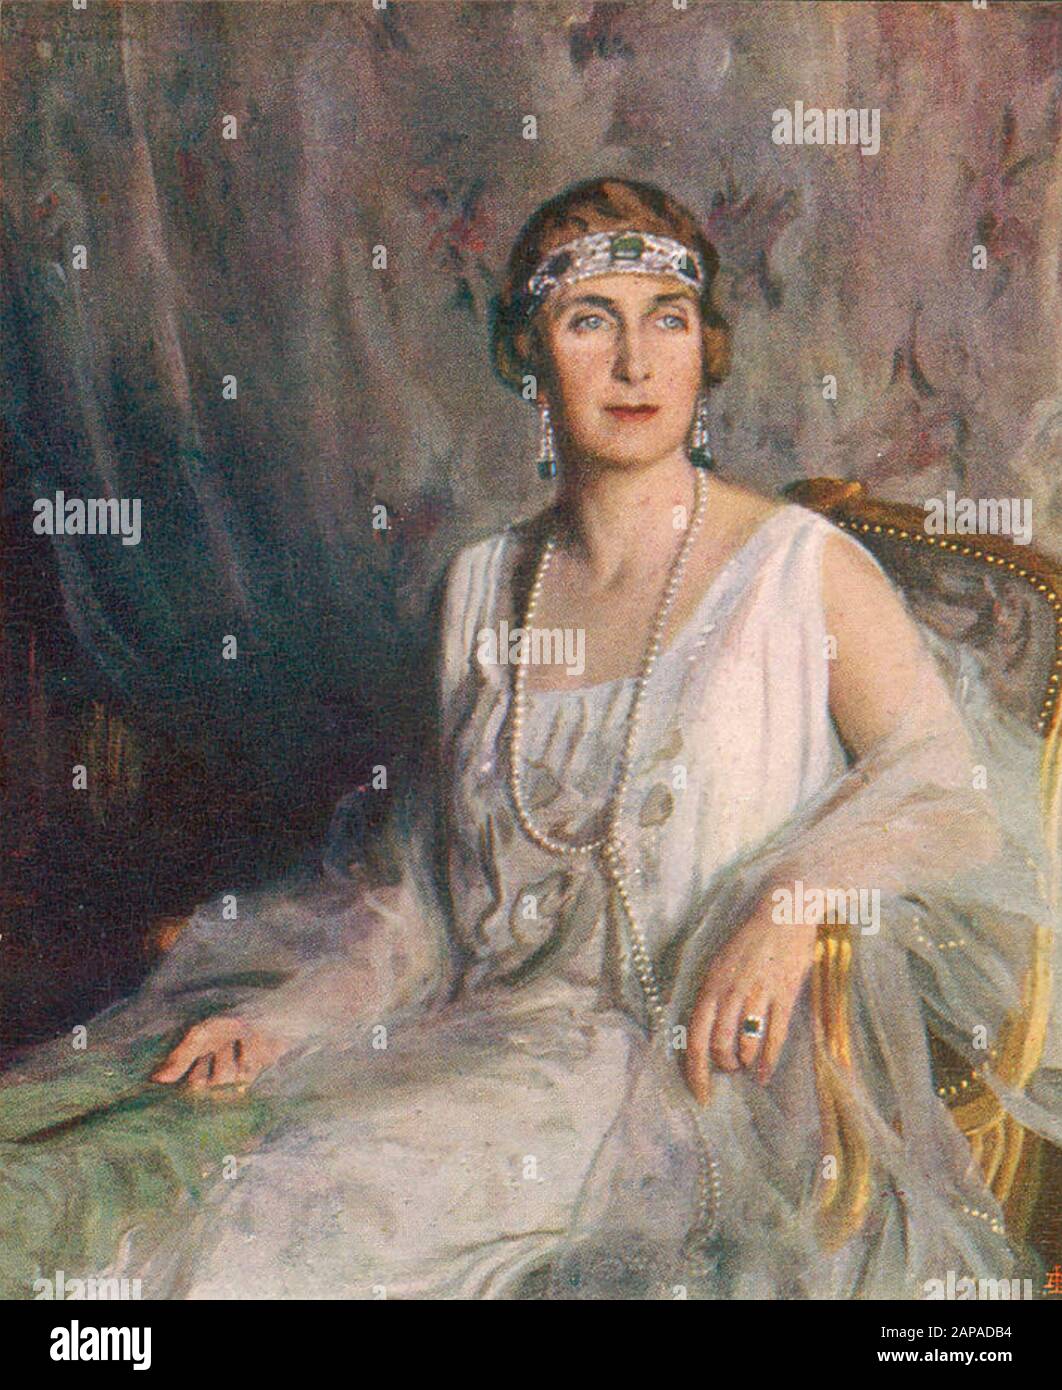 Victoria EUGENIE VON BATTENBERG (1887-1969) Königin von Spanien als Ehefrau von Alfonso XIII Gemalt von Philip de László um 1920 Stockfoto